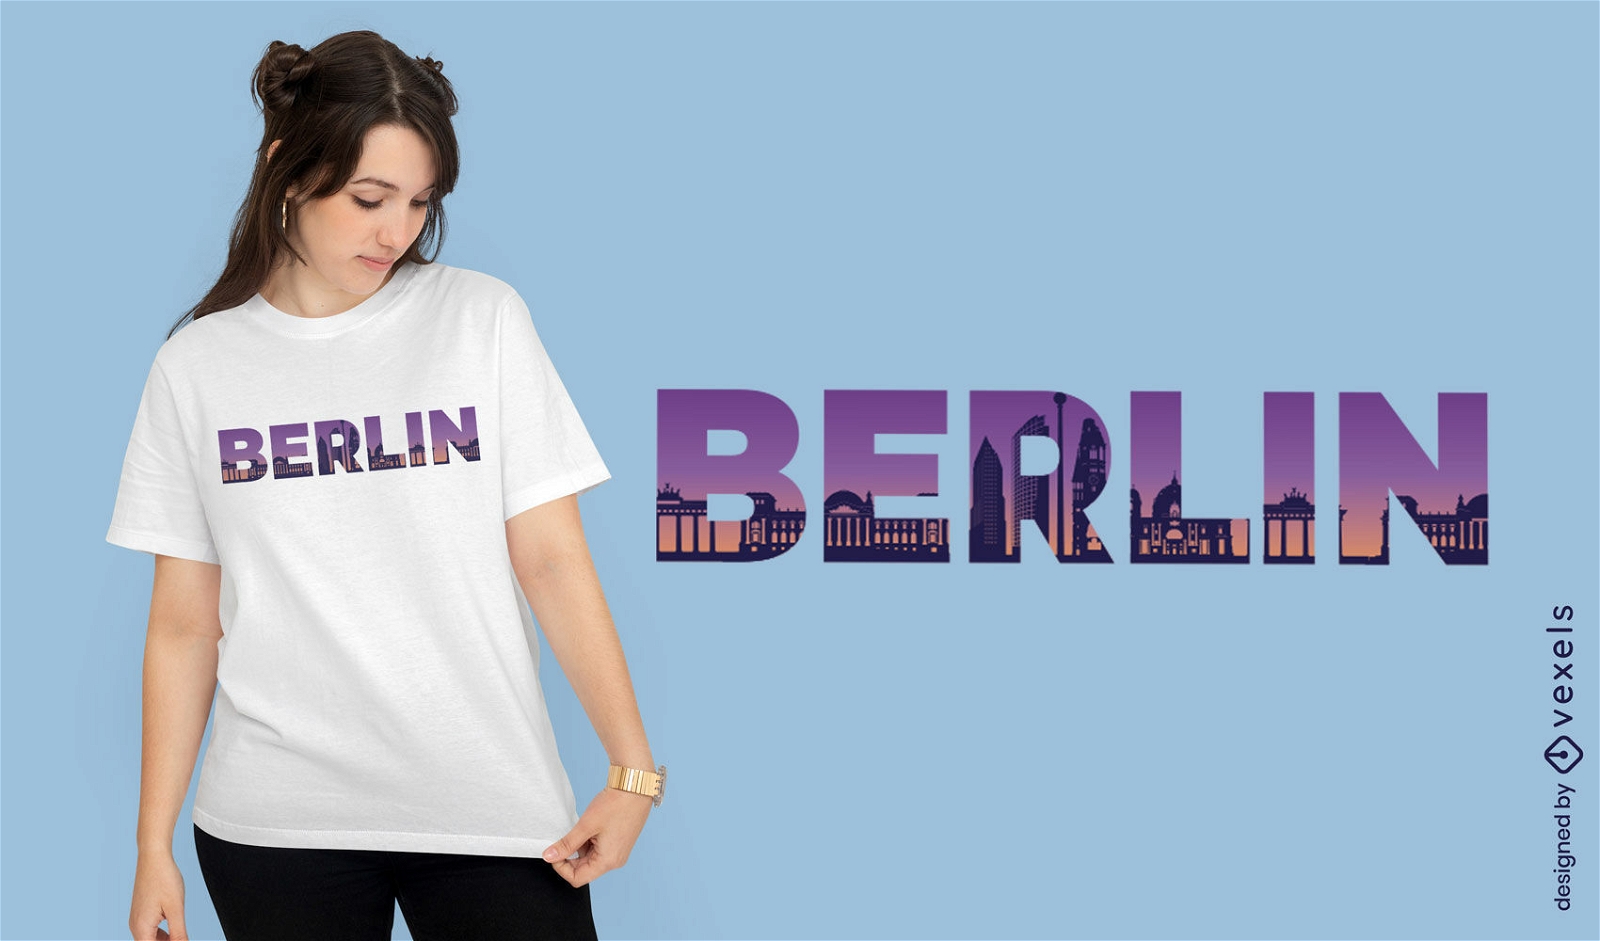 Berlin city skyline t-shirt design